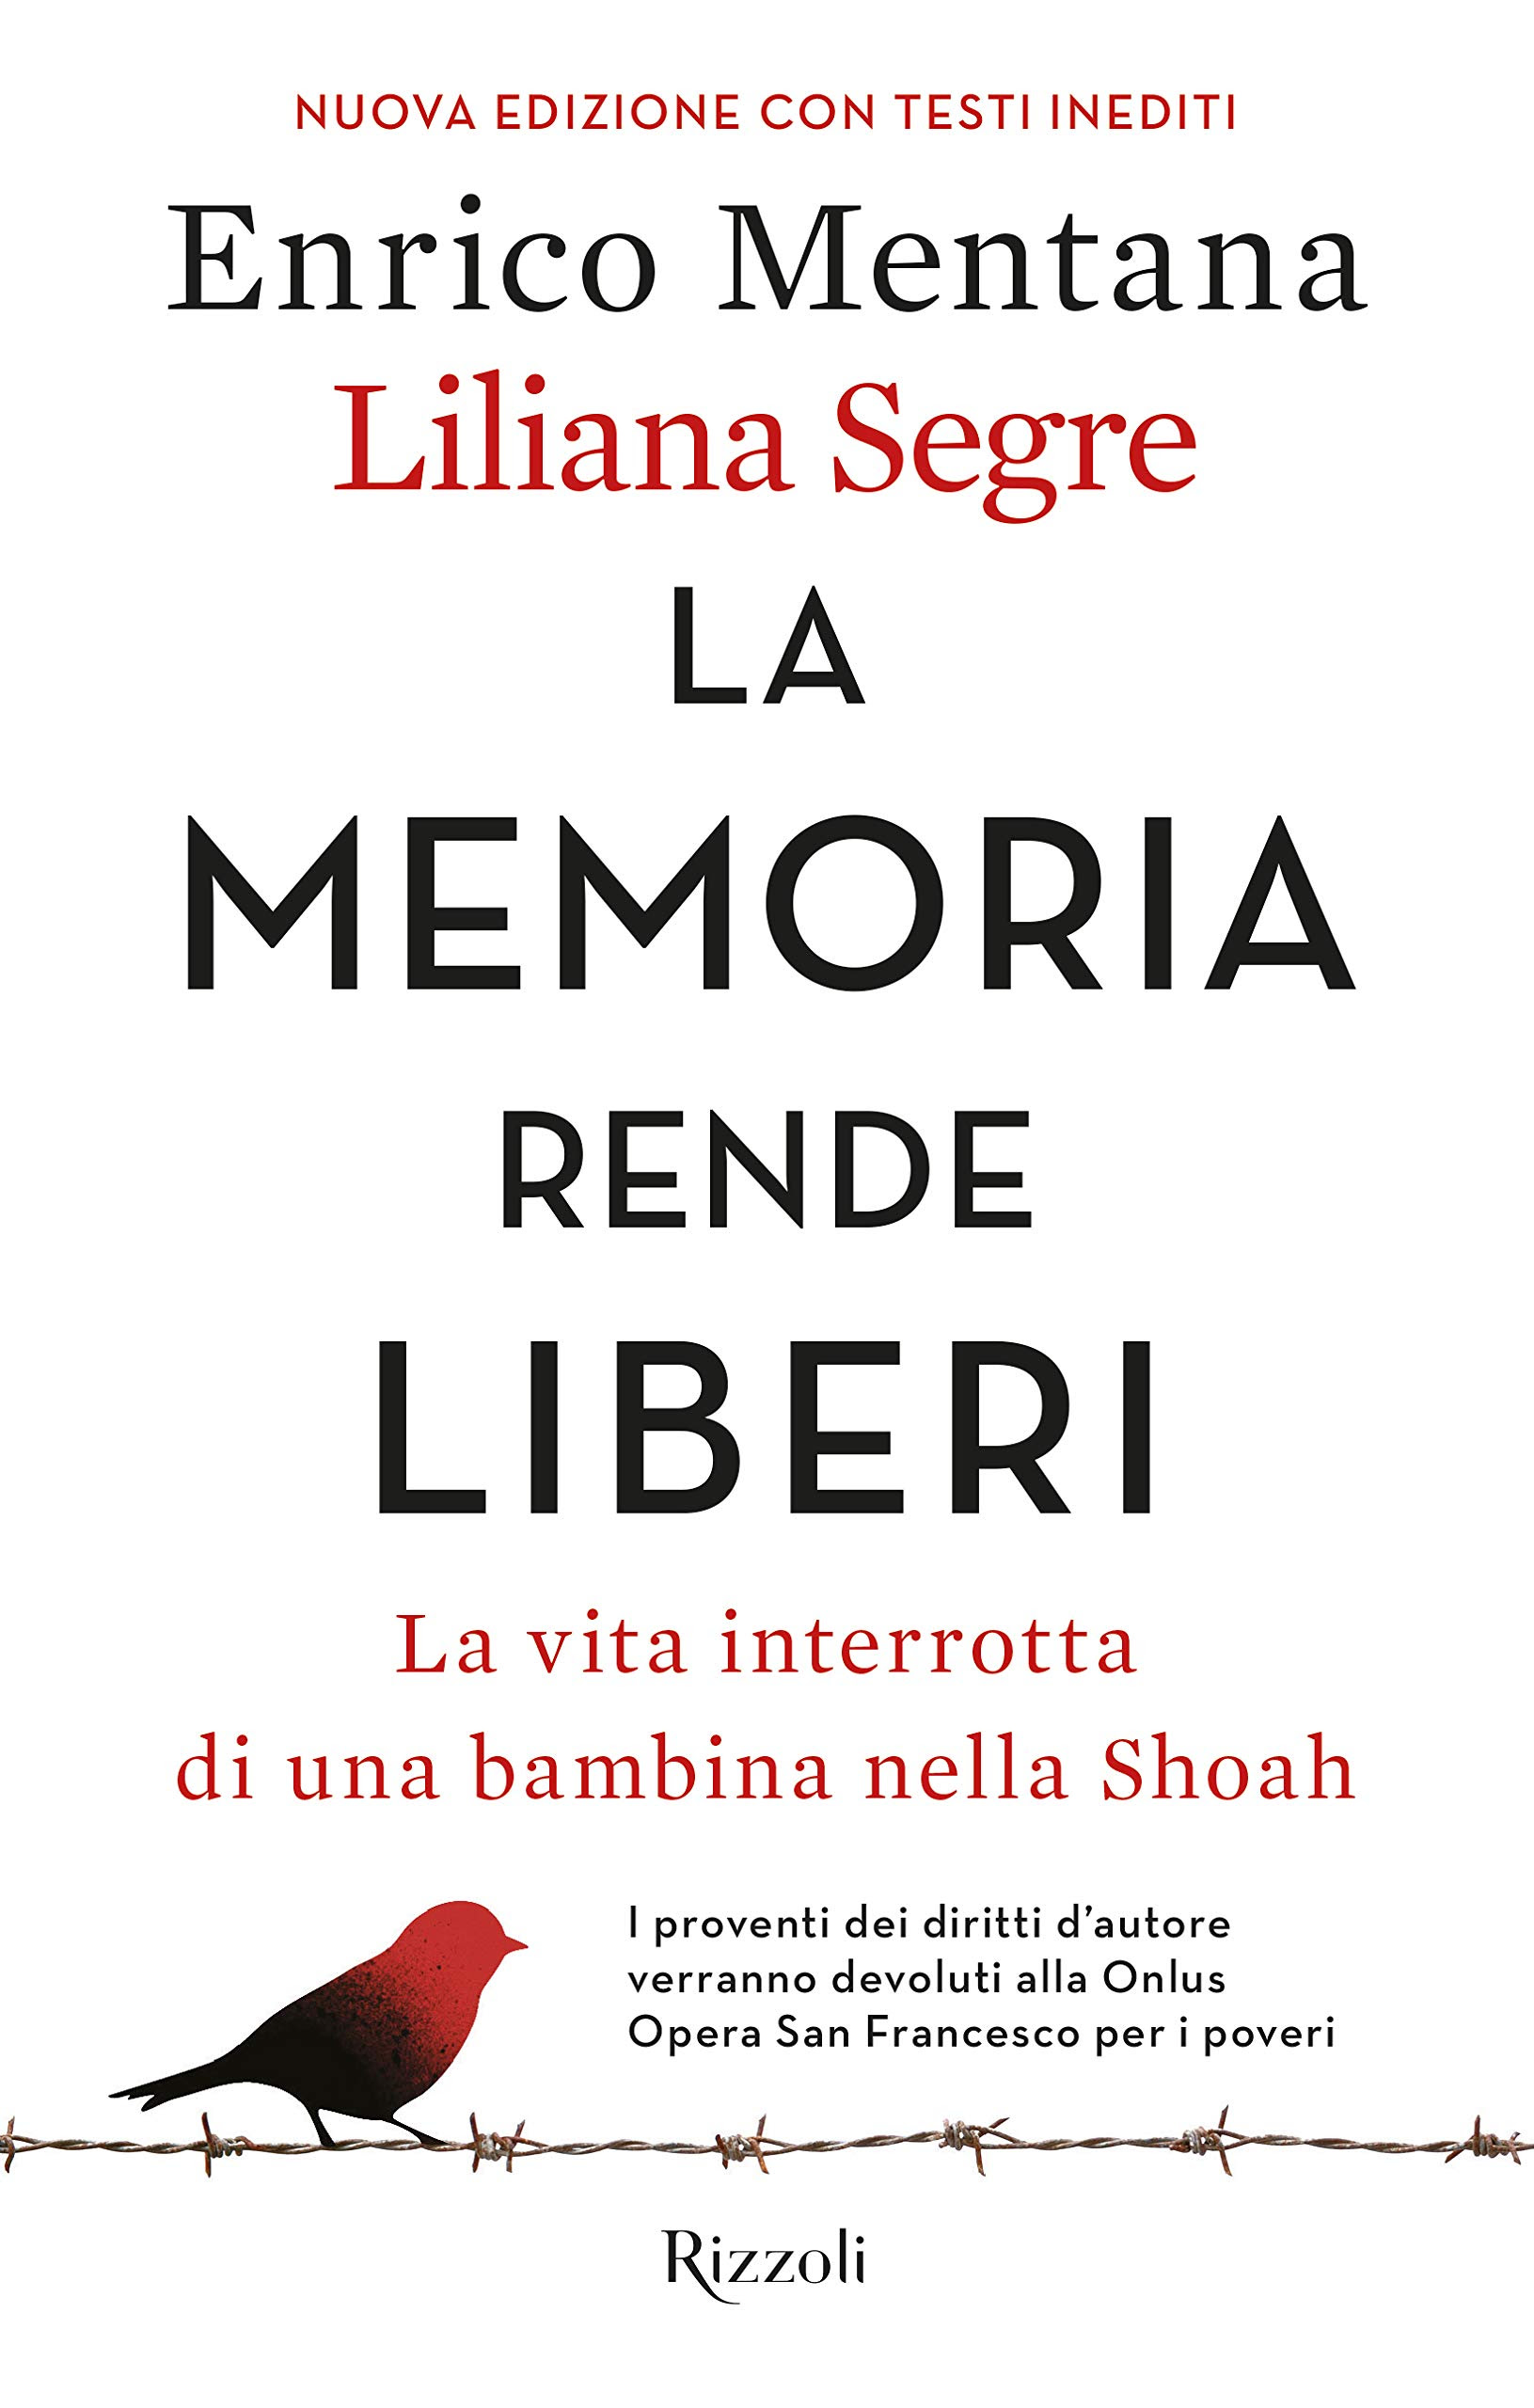 La memoria rende liberi: La vita interrotta di una bambina nella Shoah in Kindle/PDF/EPUB